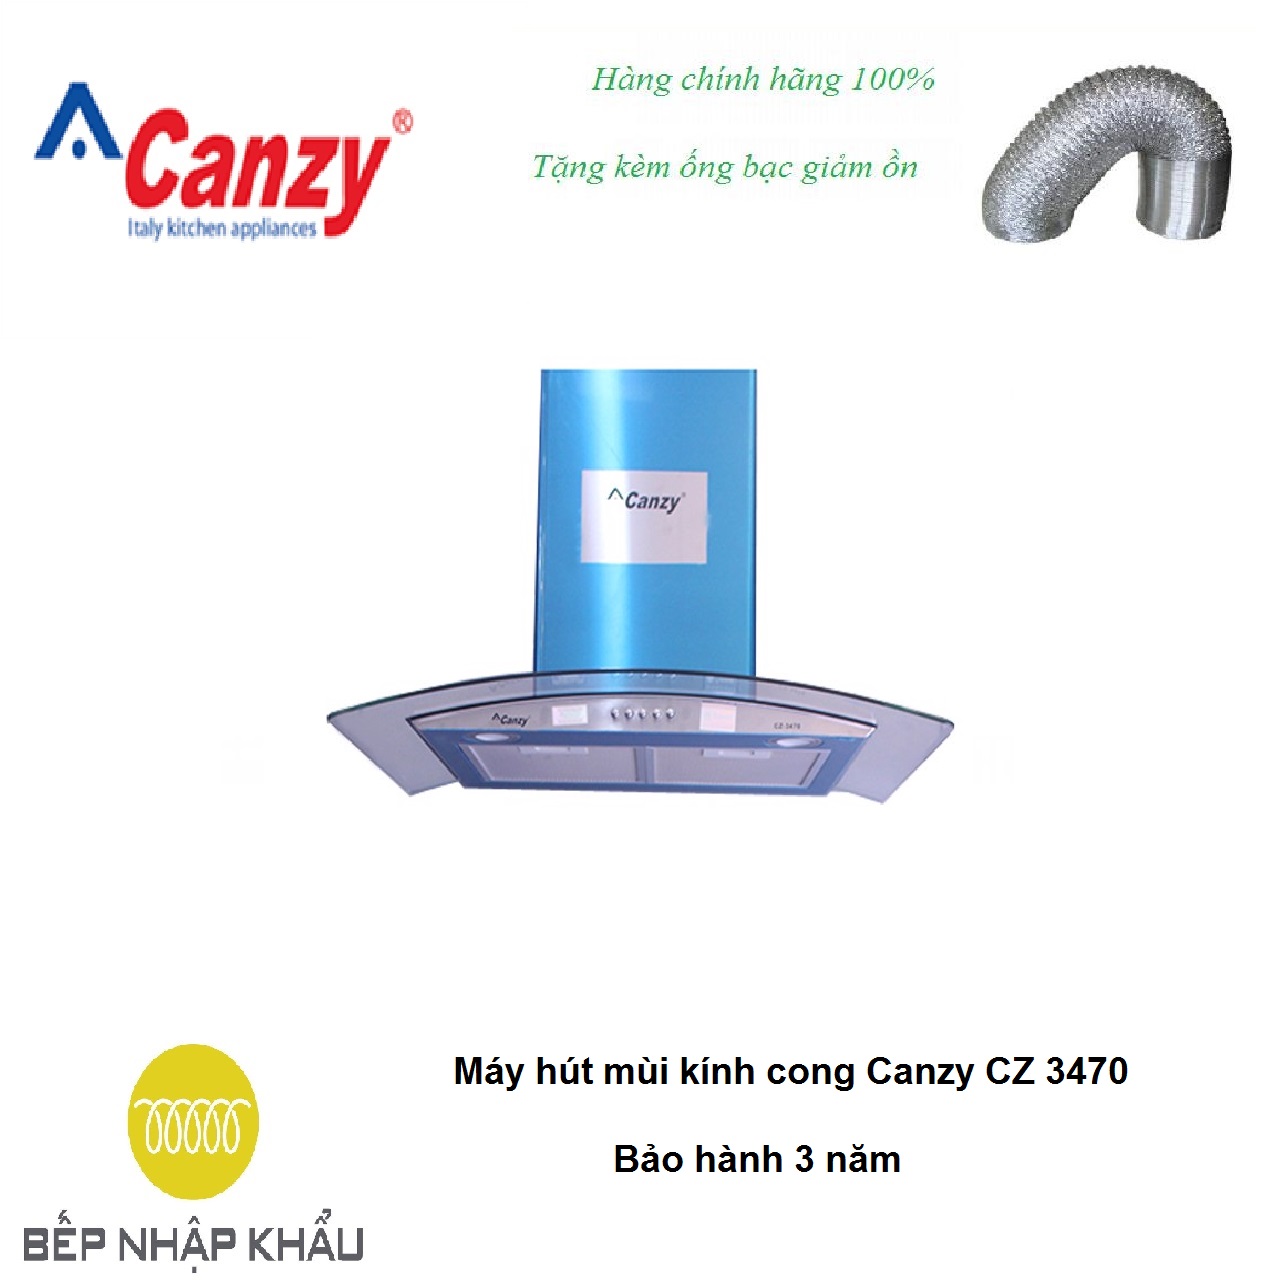 Máy hút mùi kính cong Canzy CZ 3470, được thiết kế tinh tế, hiện đại, làm từ chất liệu hợp...